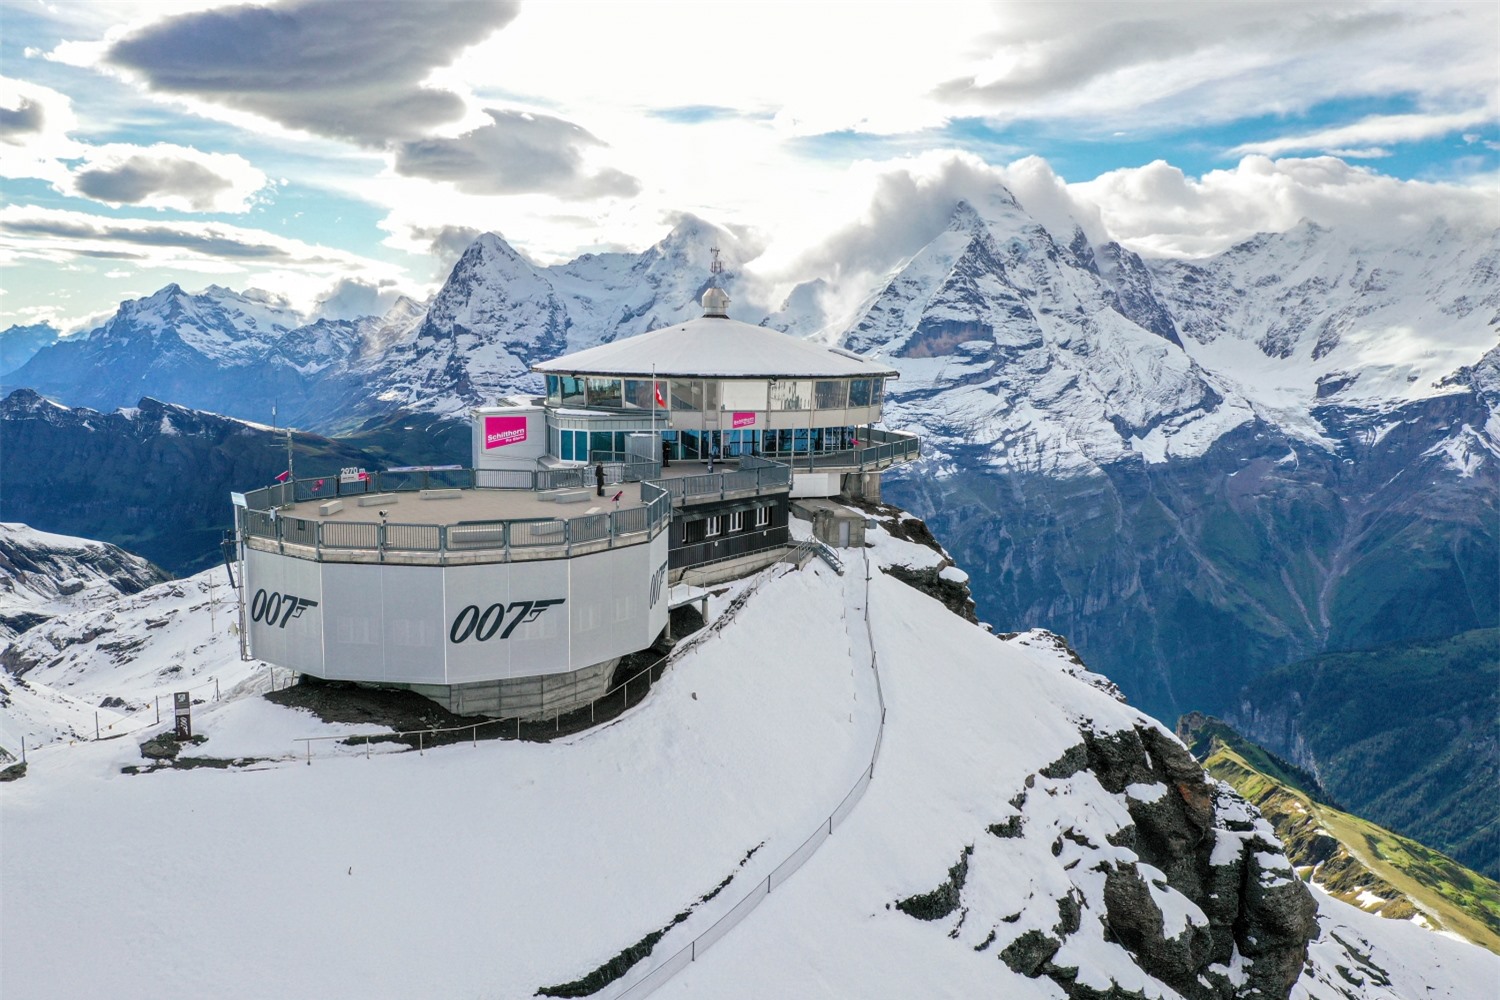 Điểm danh 5 ngọn núi tuyết đẹp nhất Thụy Sĩ